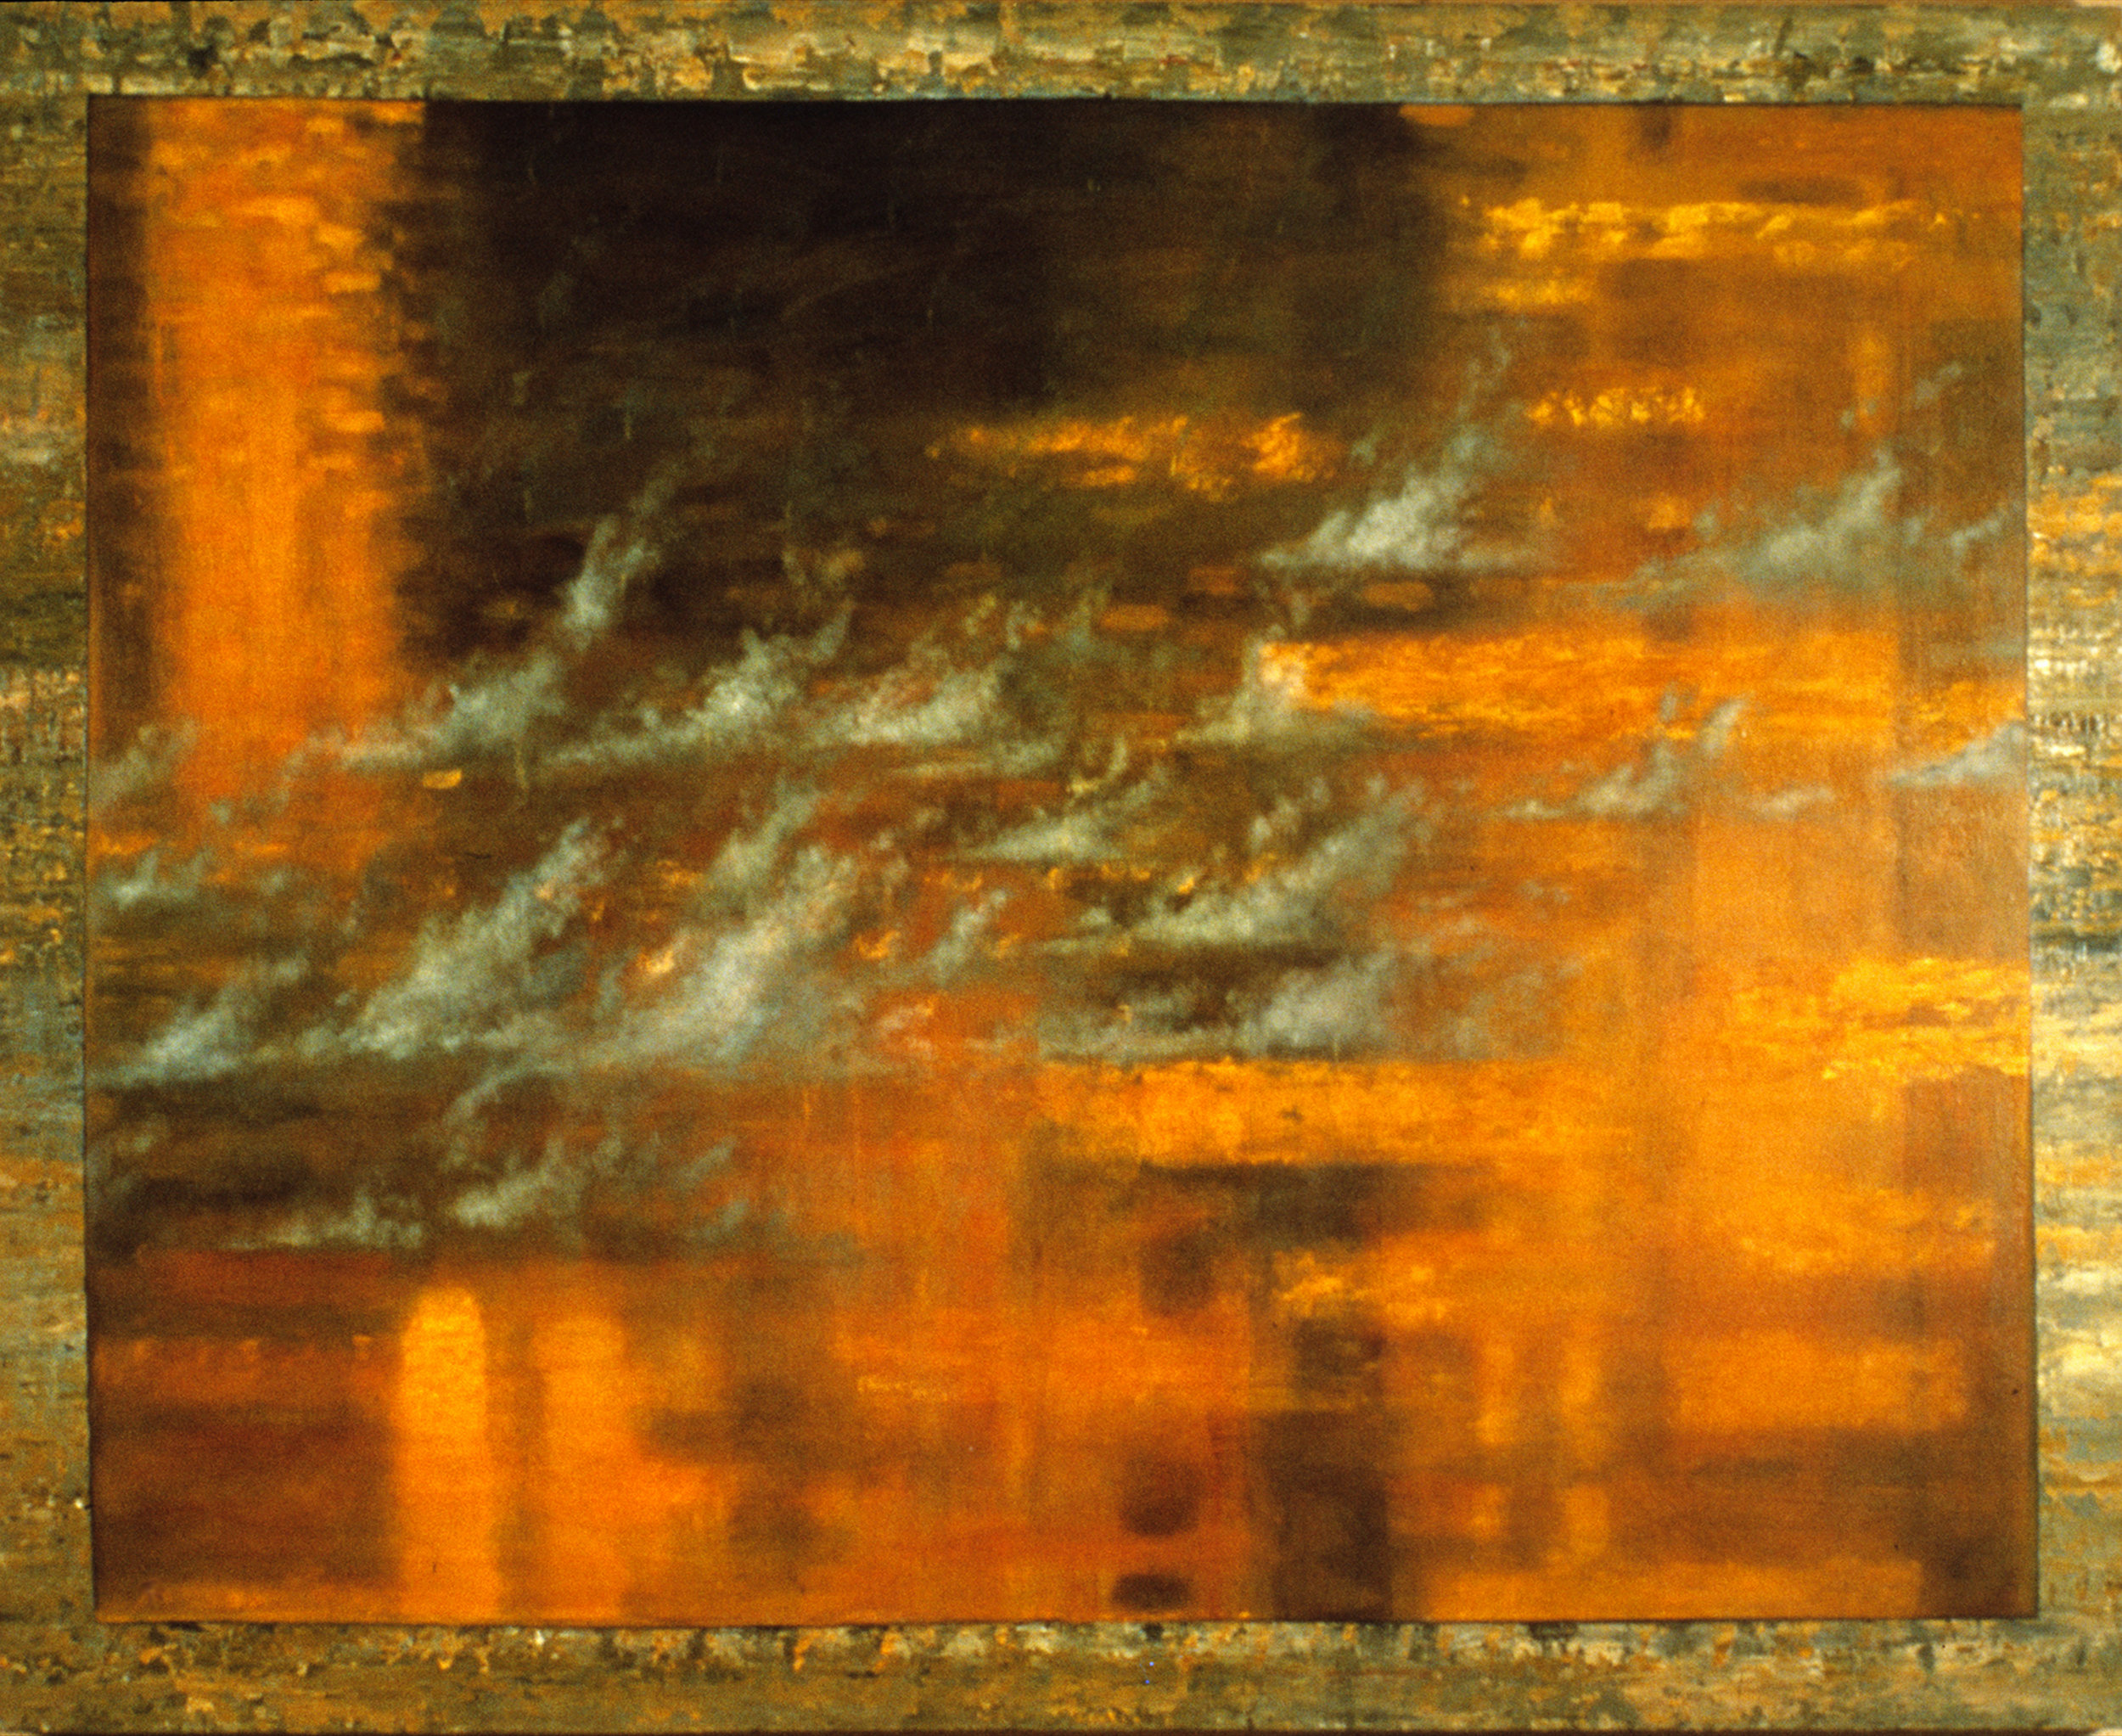  "Fools Gold"  Oil on Canvas,  122cm x 91cm   RHA Gallery, Dublin  1990 